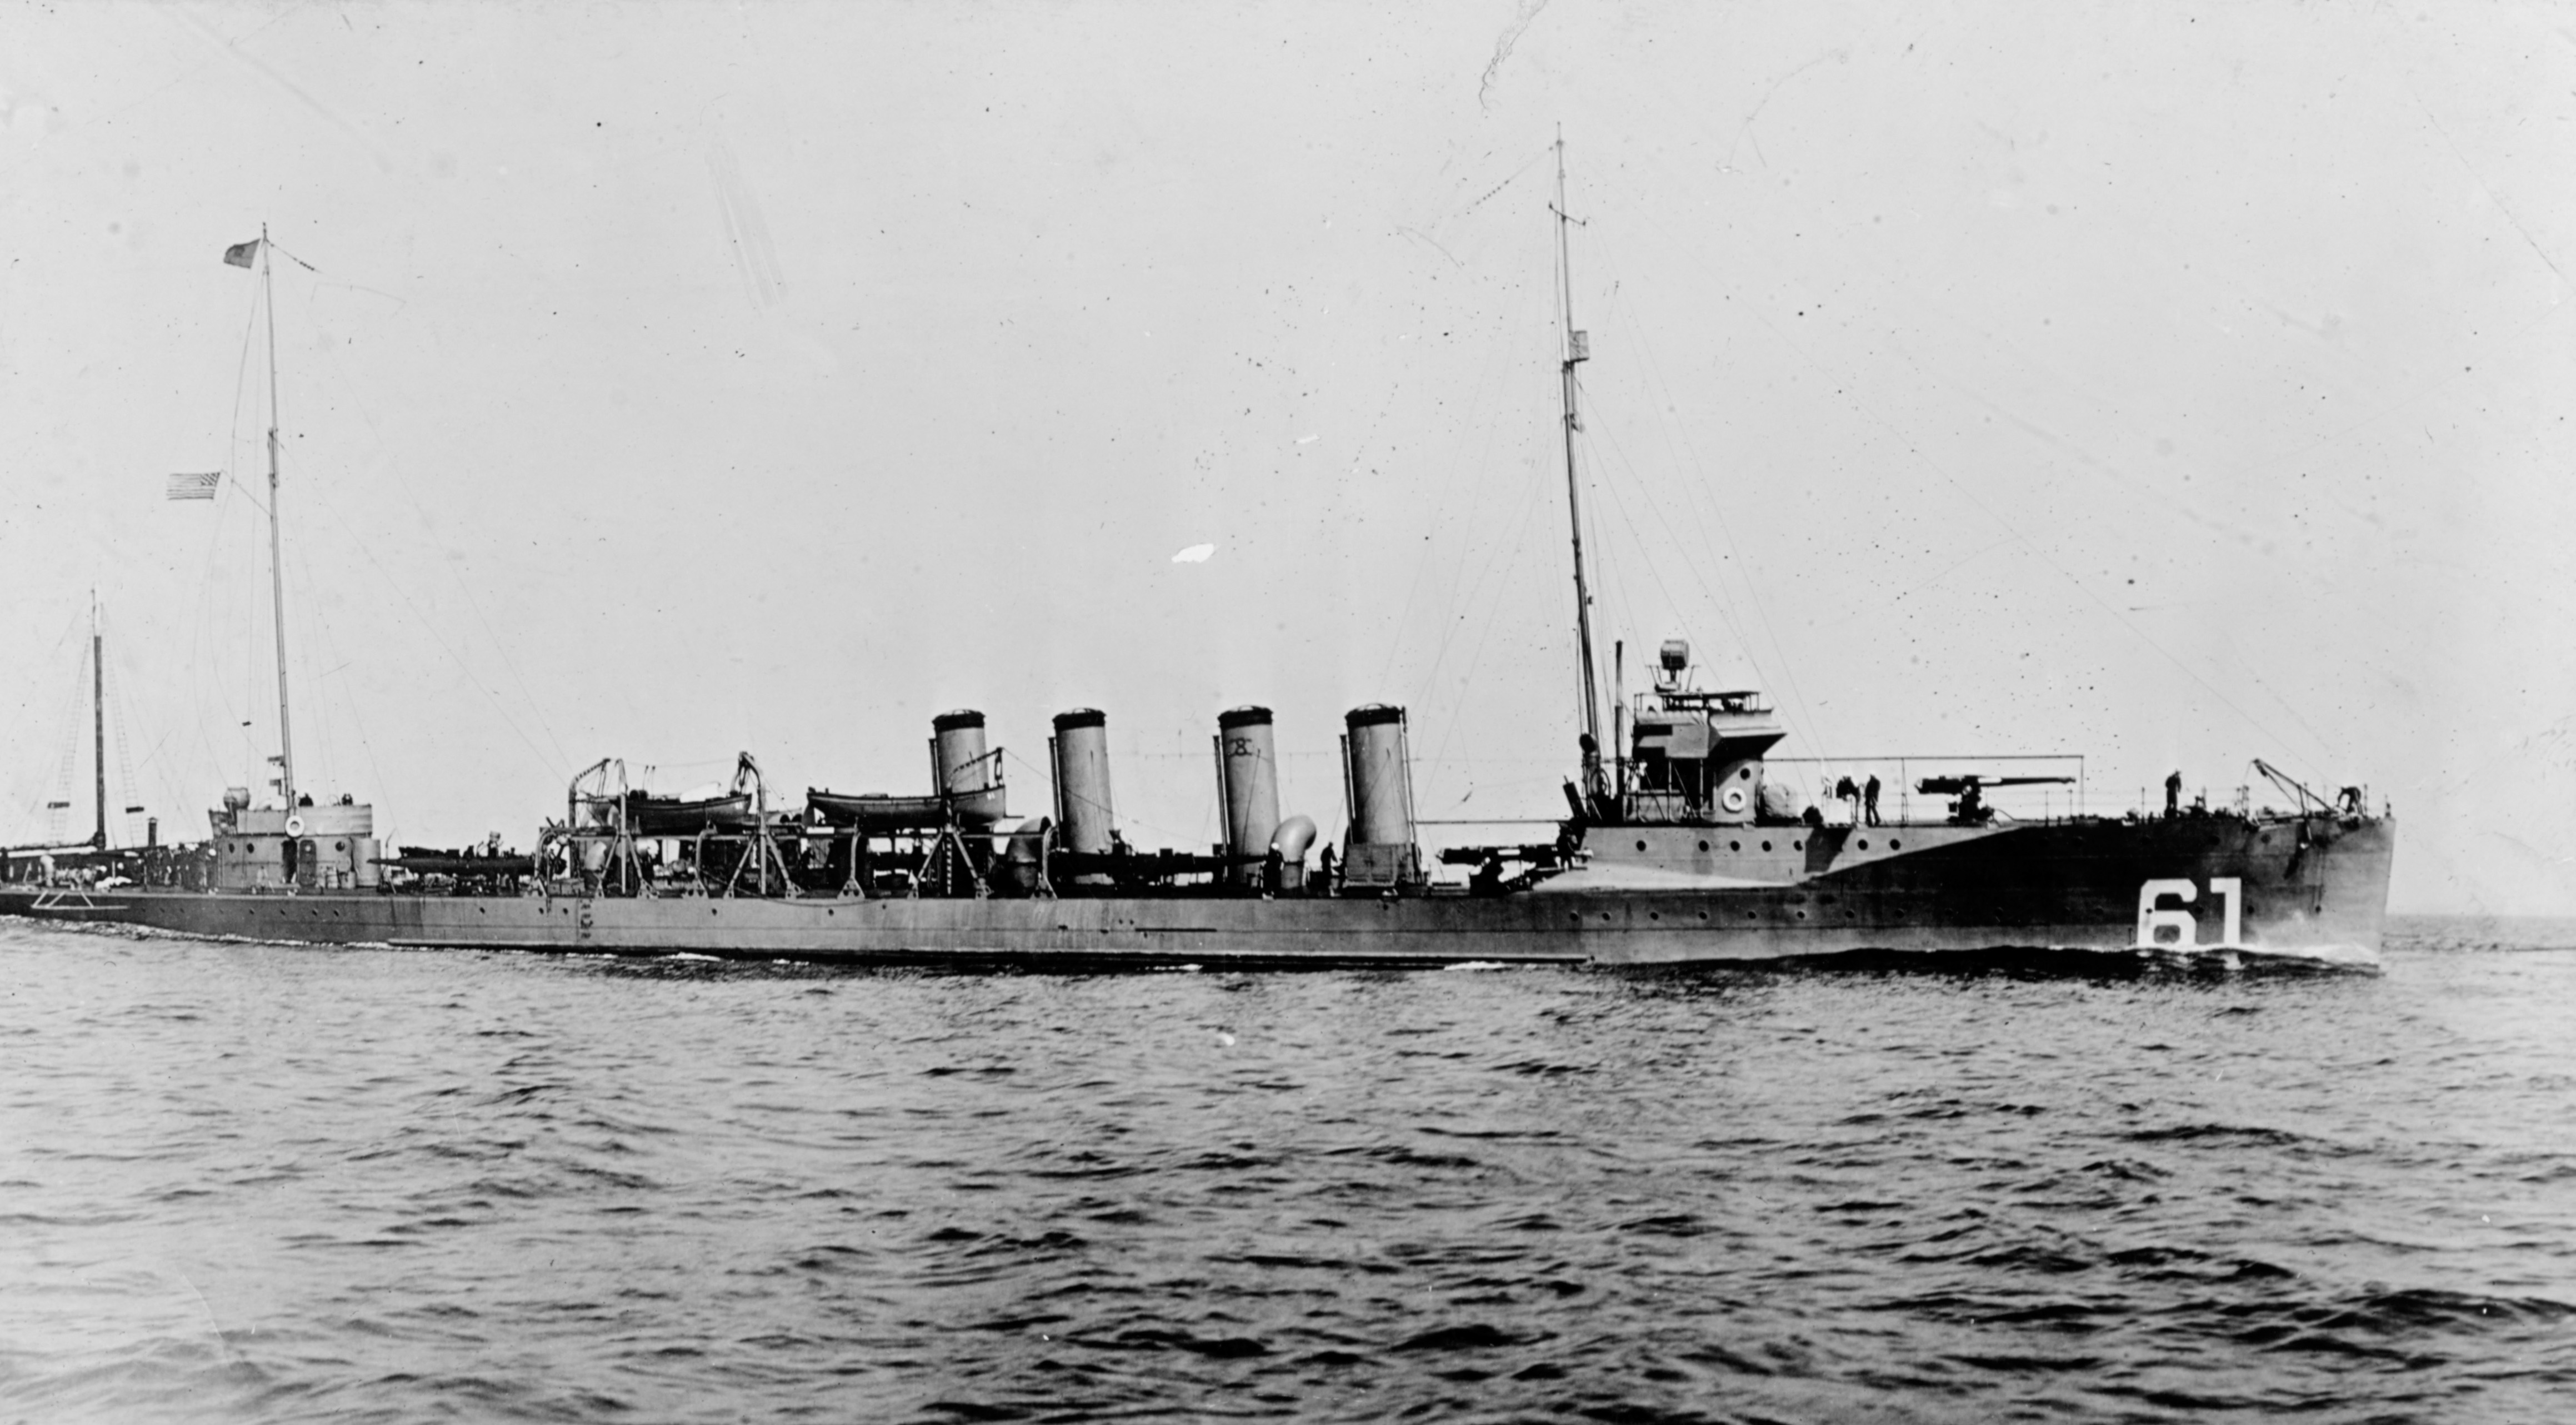 Destroyer USS Jacob Jones, which was sunk during World War One